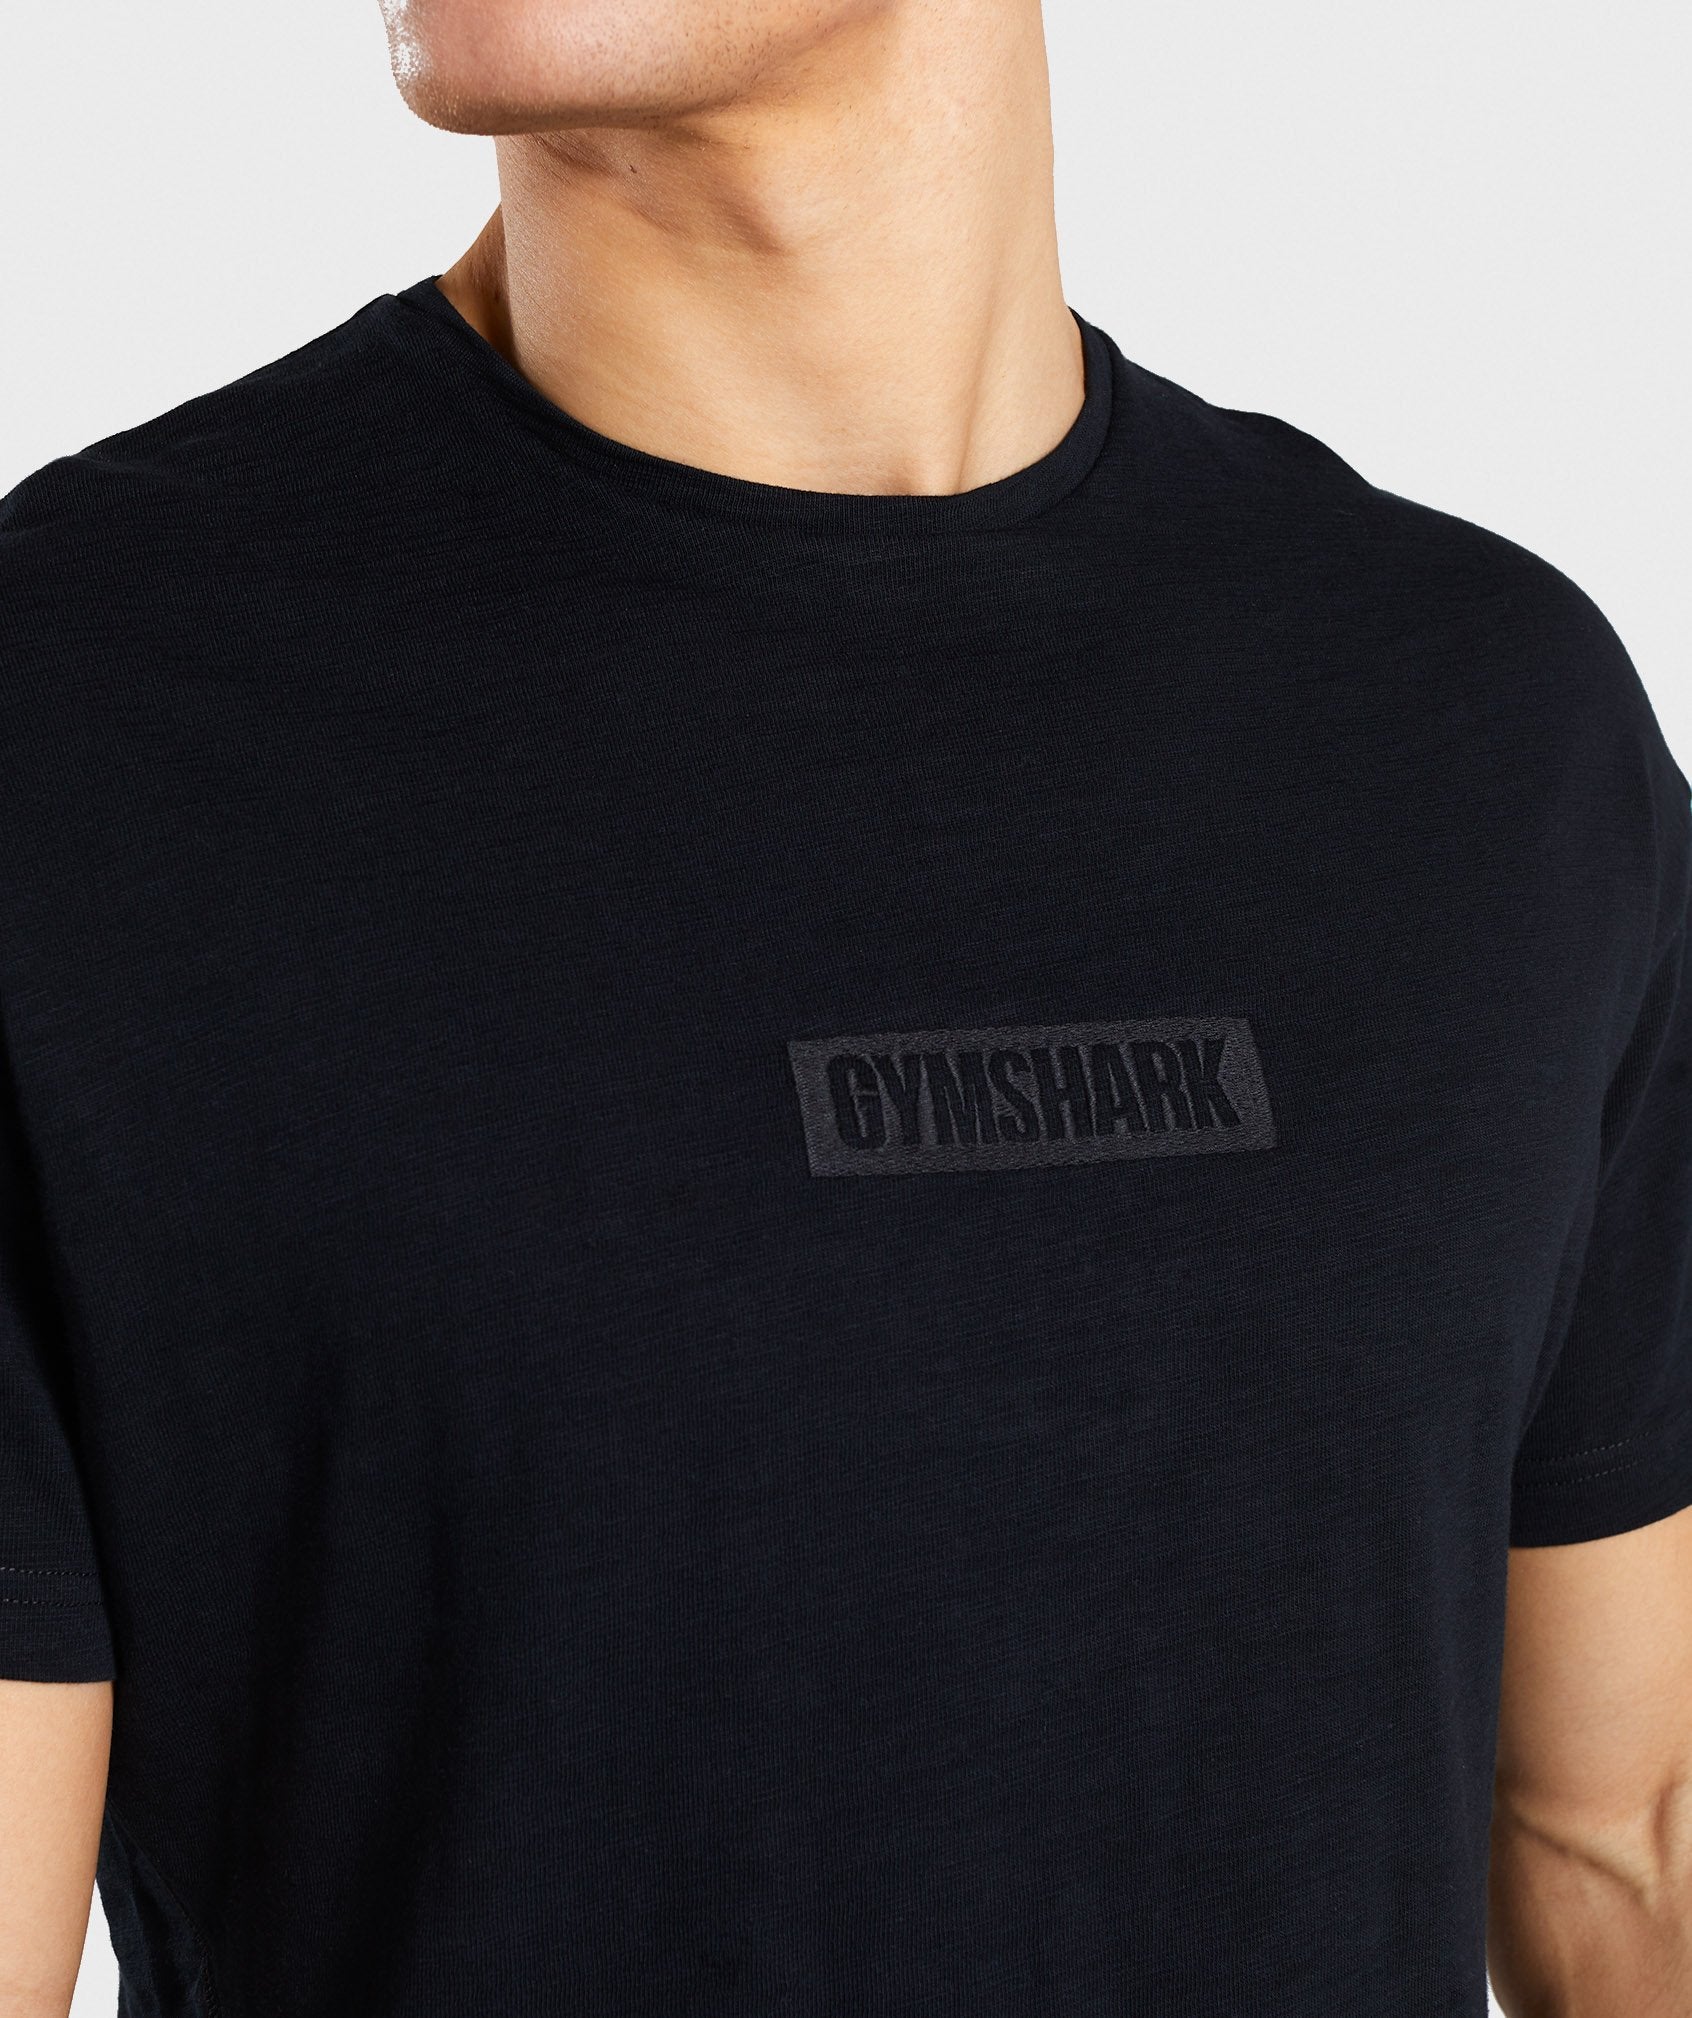 Tonal T-Shirt in Black - view 6